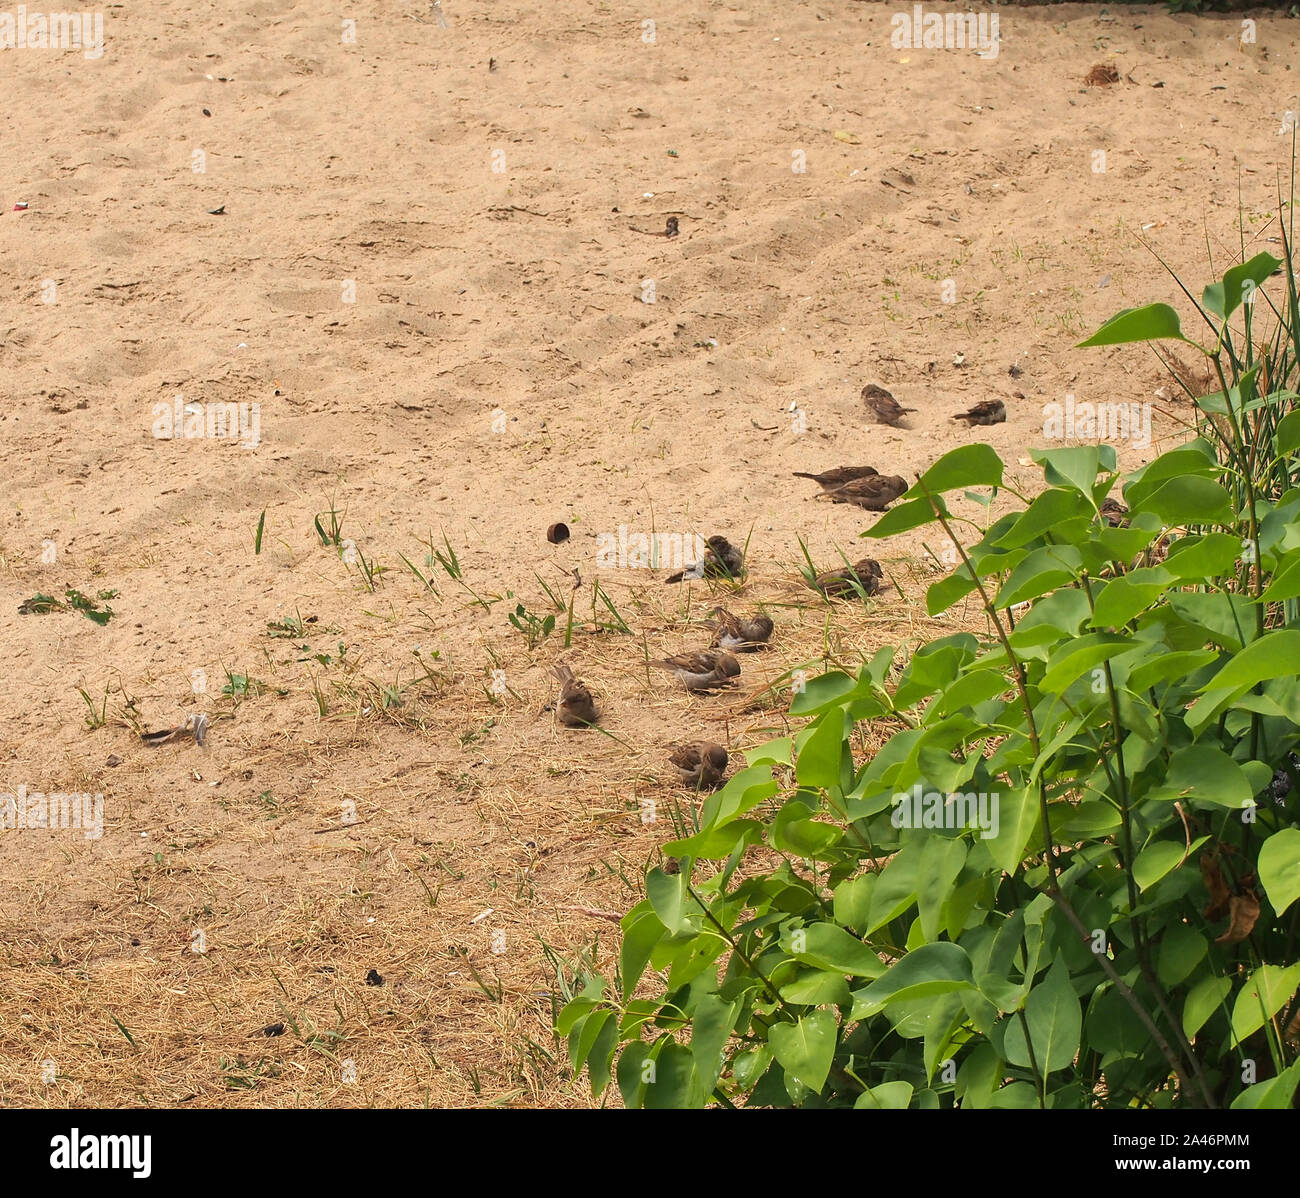 Une volée de moineaux se reposant sur le sable. Les oiseaux se baignent dans le sable. Des oiseaux sauvages. Banque D'Images